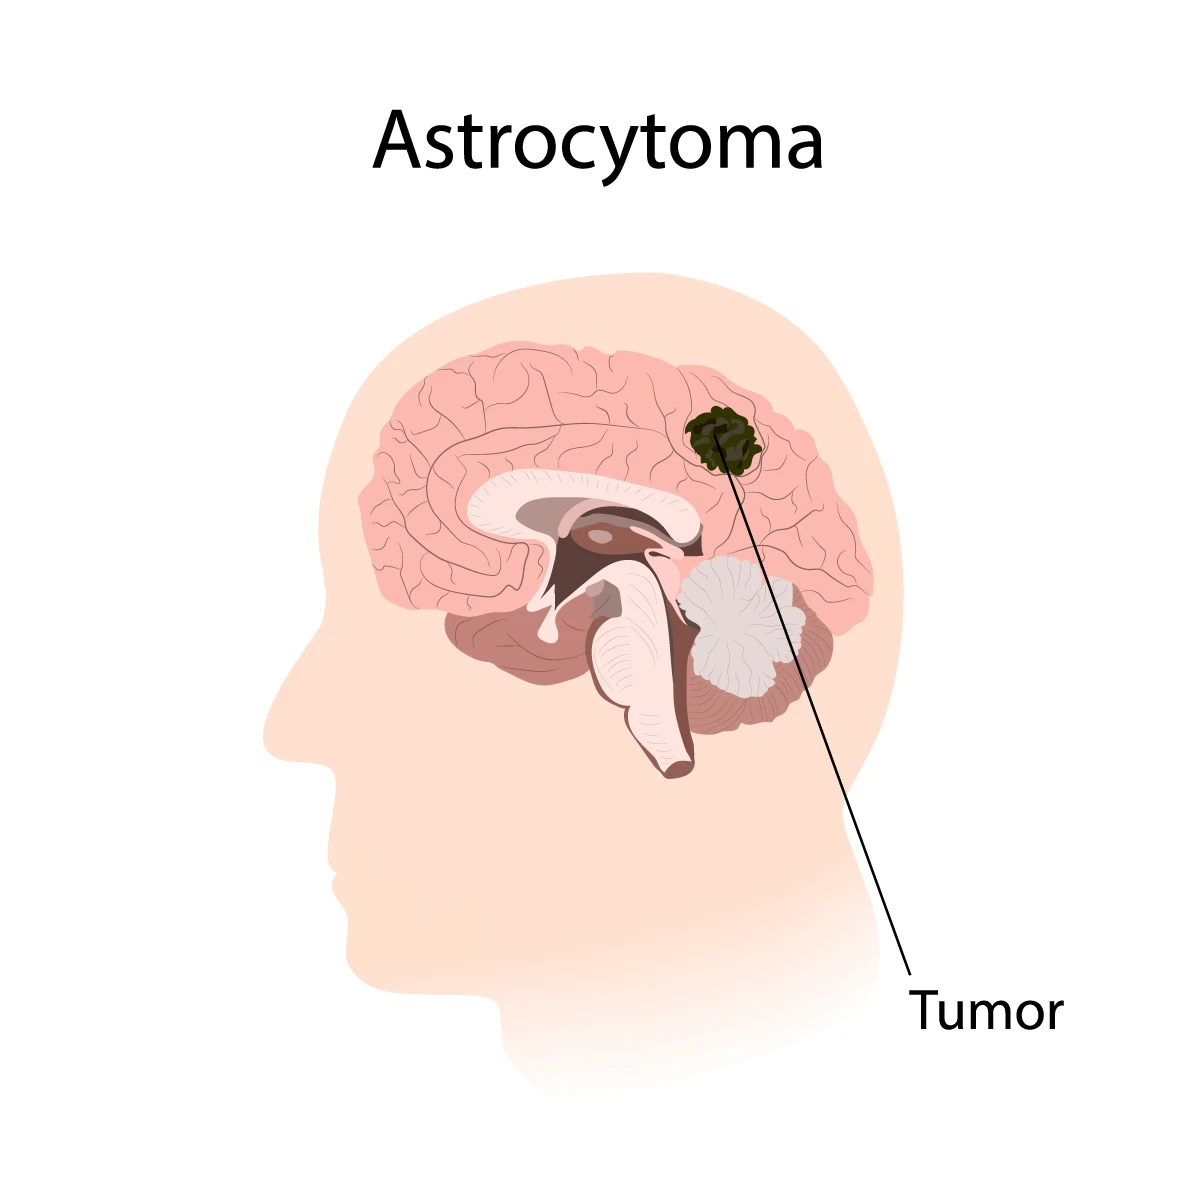 تومورهای آستروسیتوما